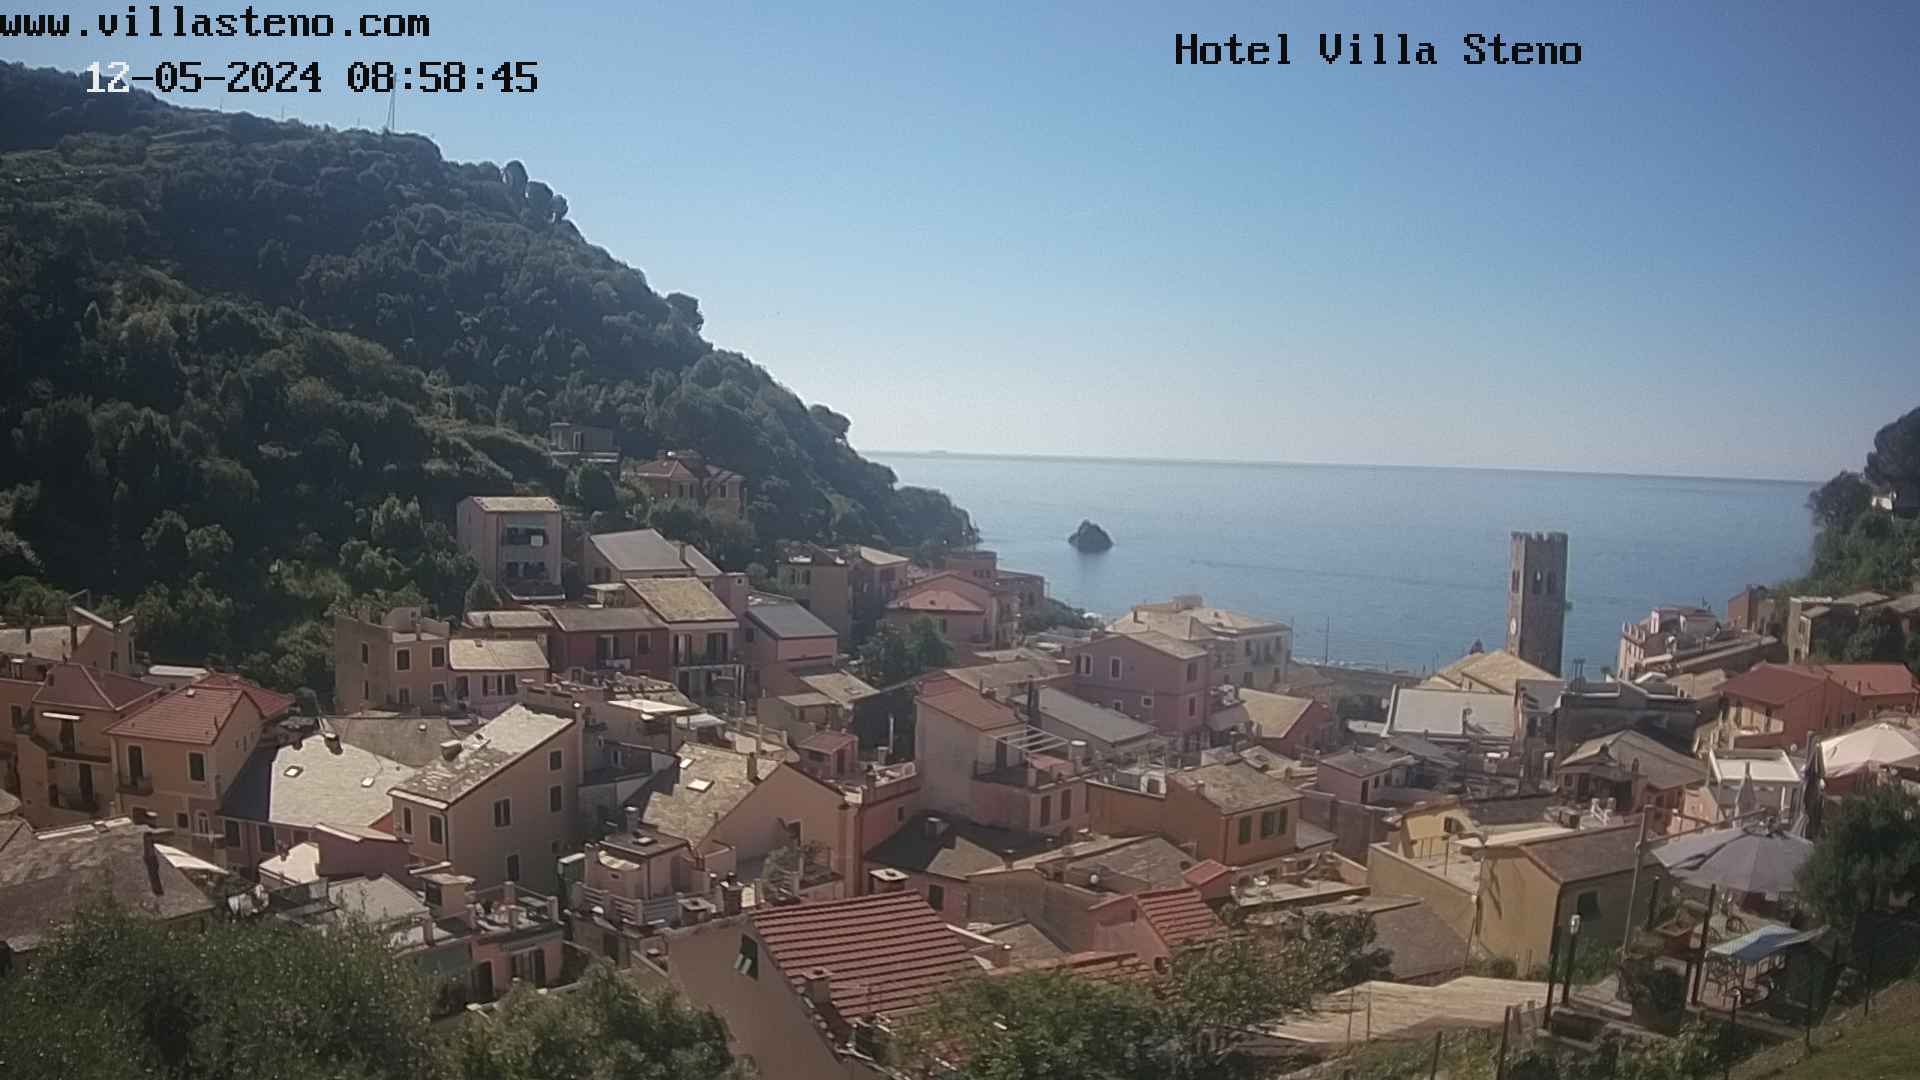 Monterosso al Mare (Cinque Terre) Fre. 10:00